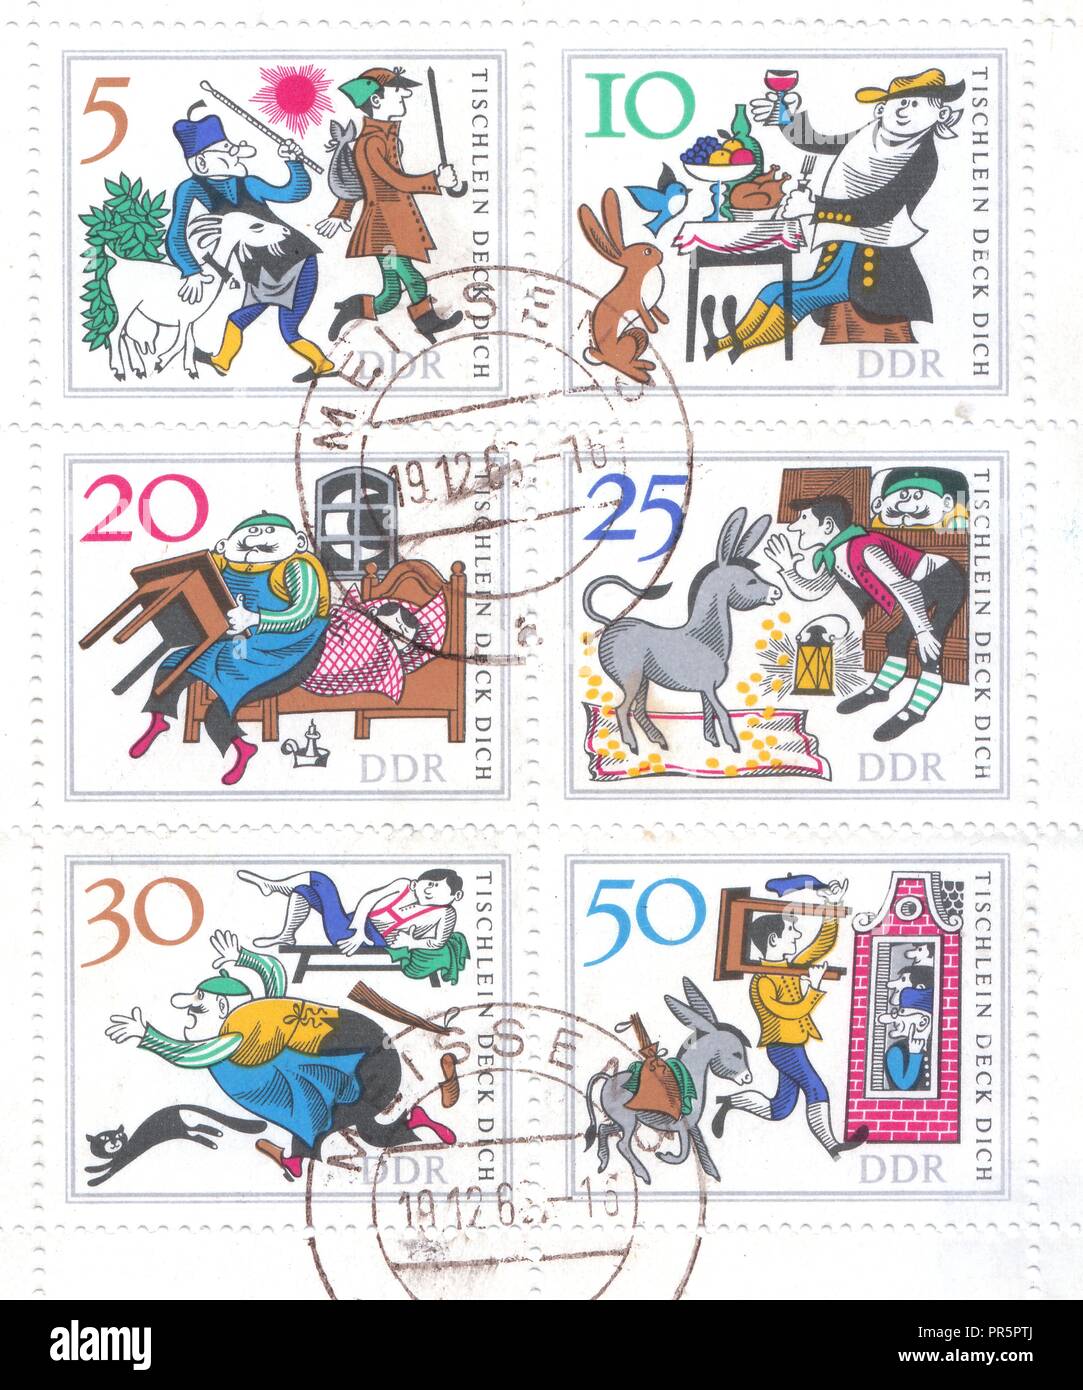 Ein Block von Briefmarken aus Deutschland, schildert eine deutsche Volkssage über eine magische Tisch, einem Esel und einem Schlagstock. Stockfoto